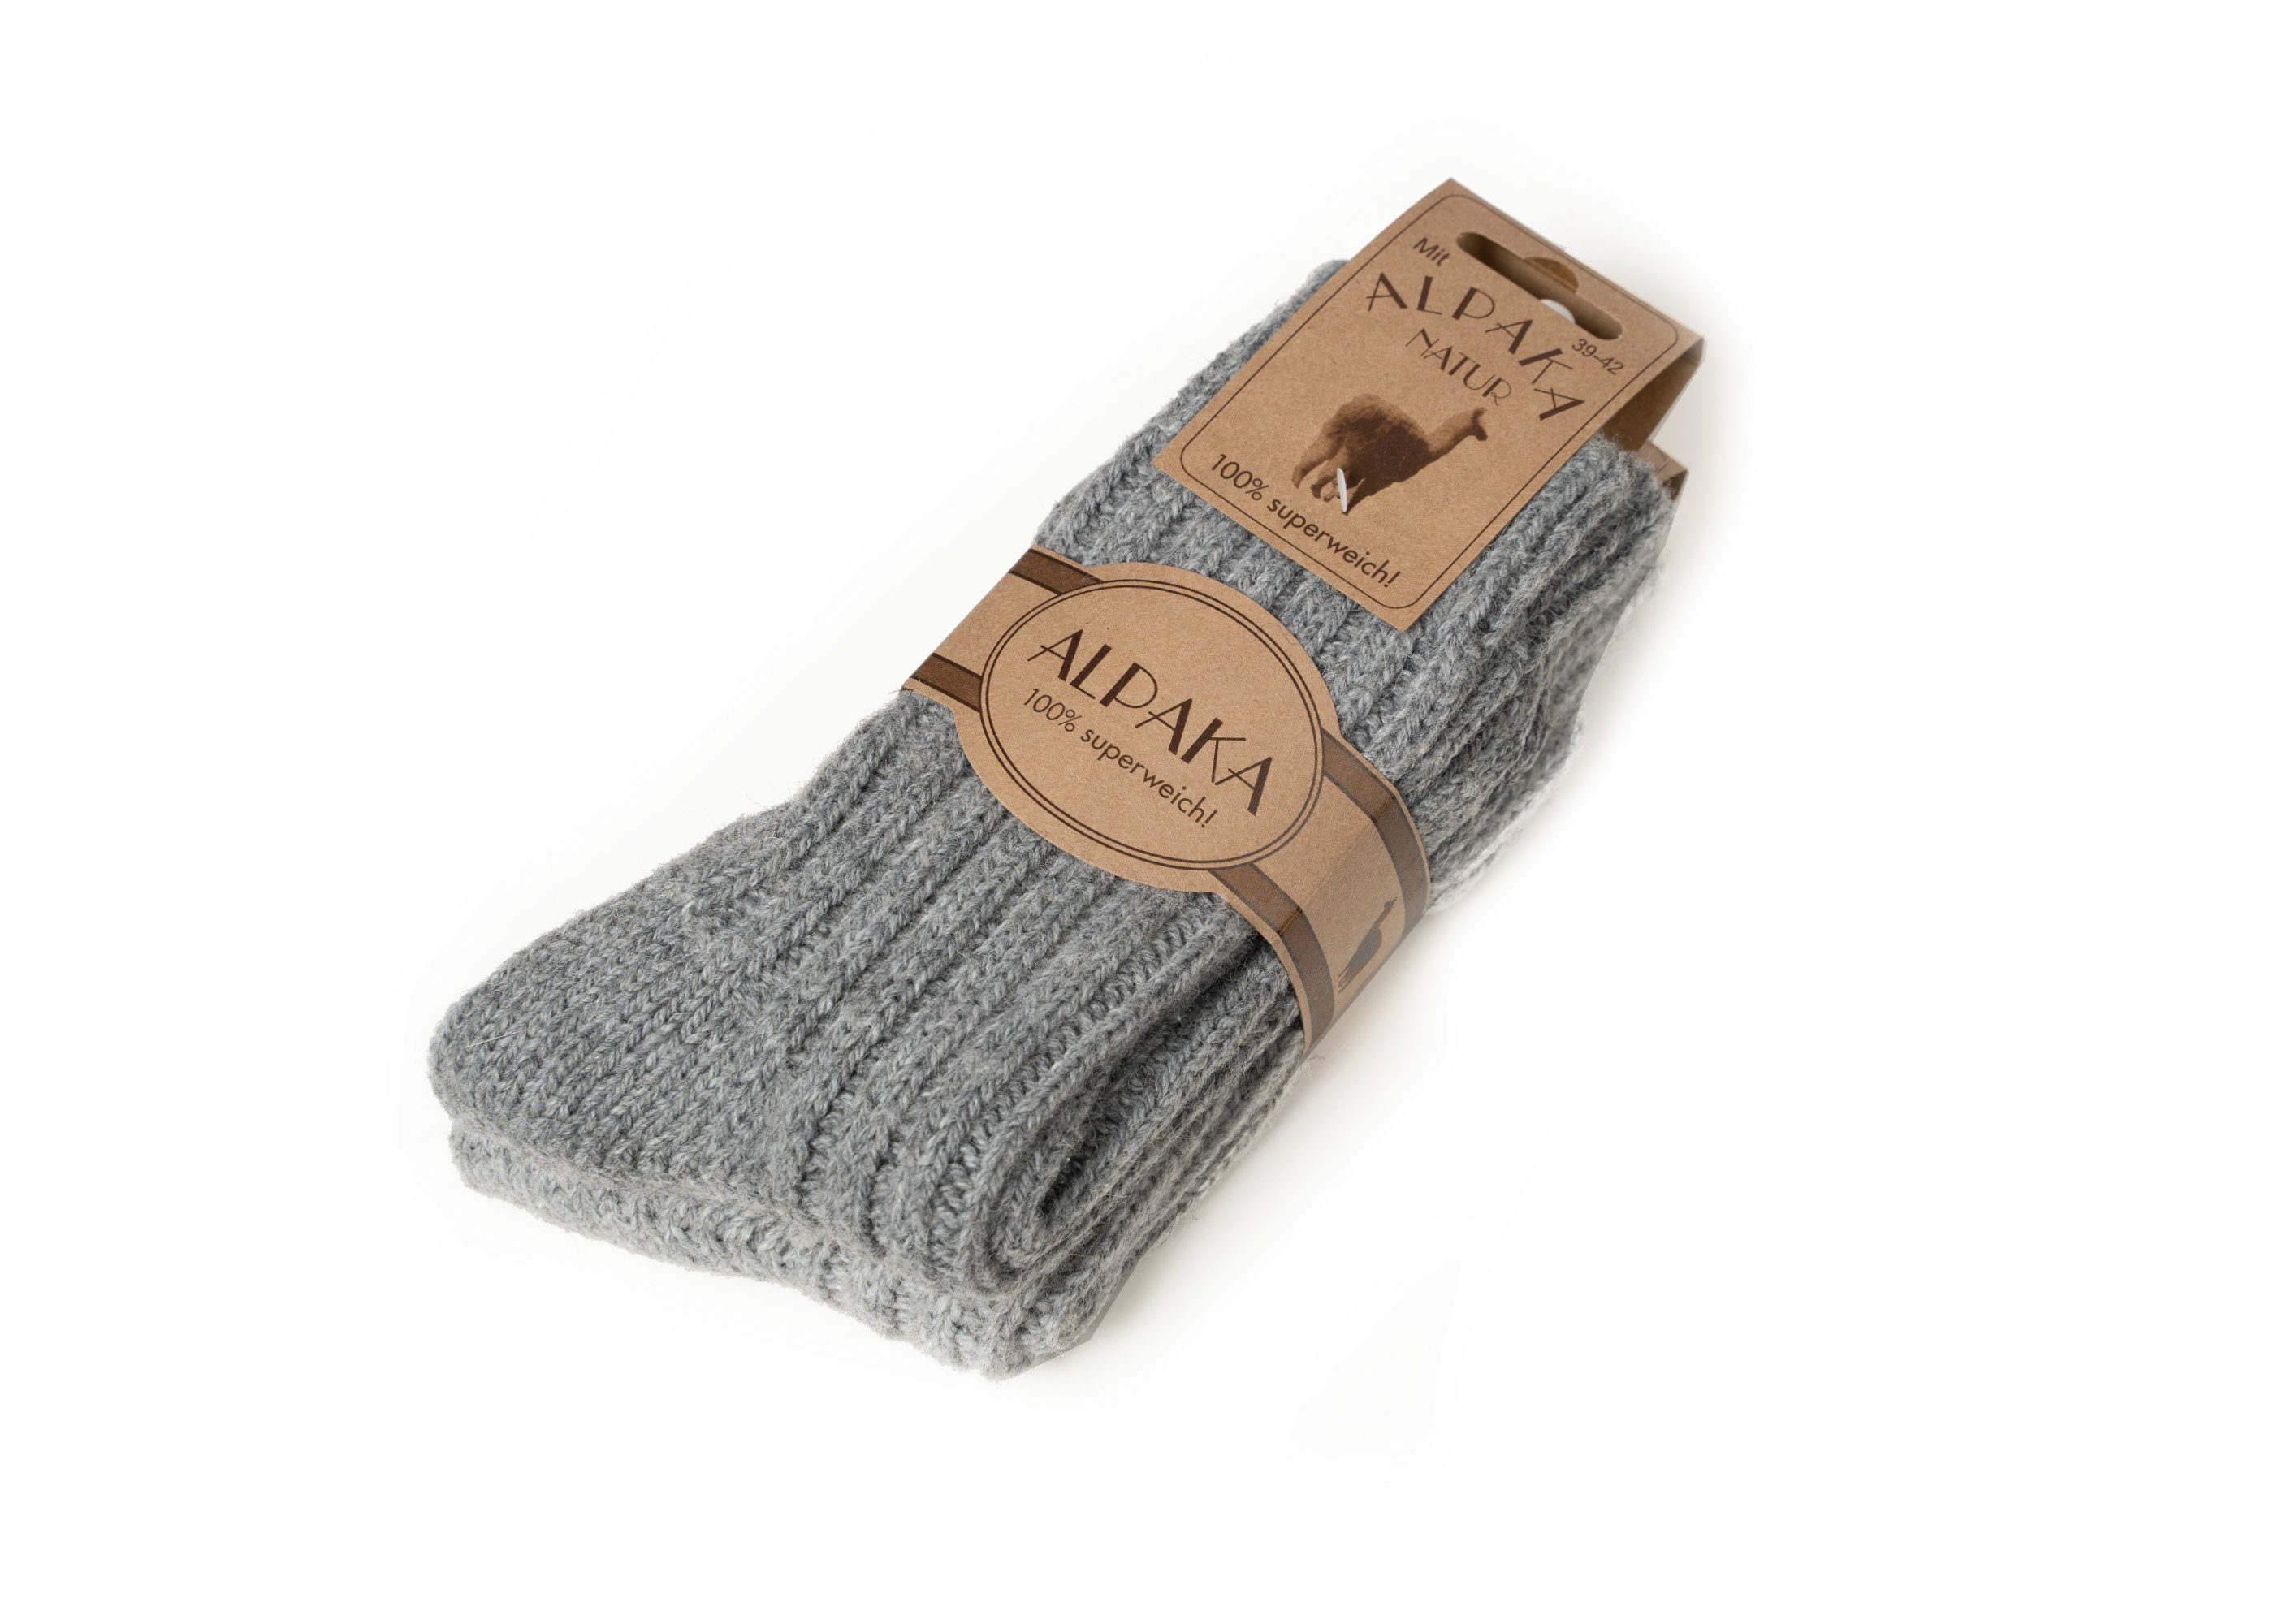 Alpakawolle 50% mit warme Socken HomeOfSocks 2xGrau Alpakawolle Wollsocken Wollanteil mit Wollsocken und Strapazierfähige und